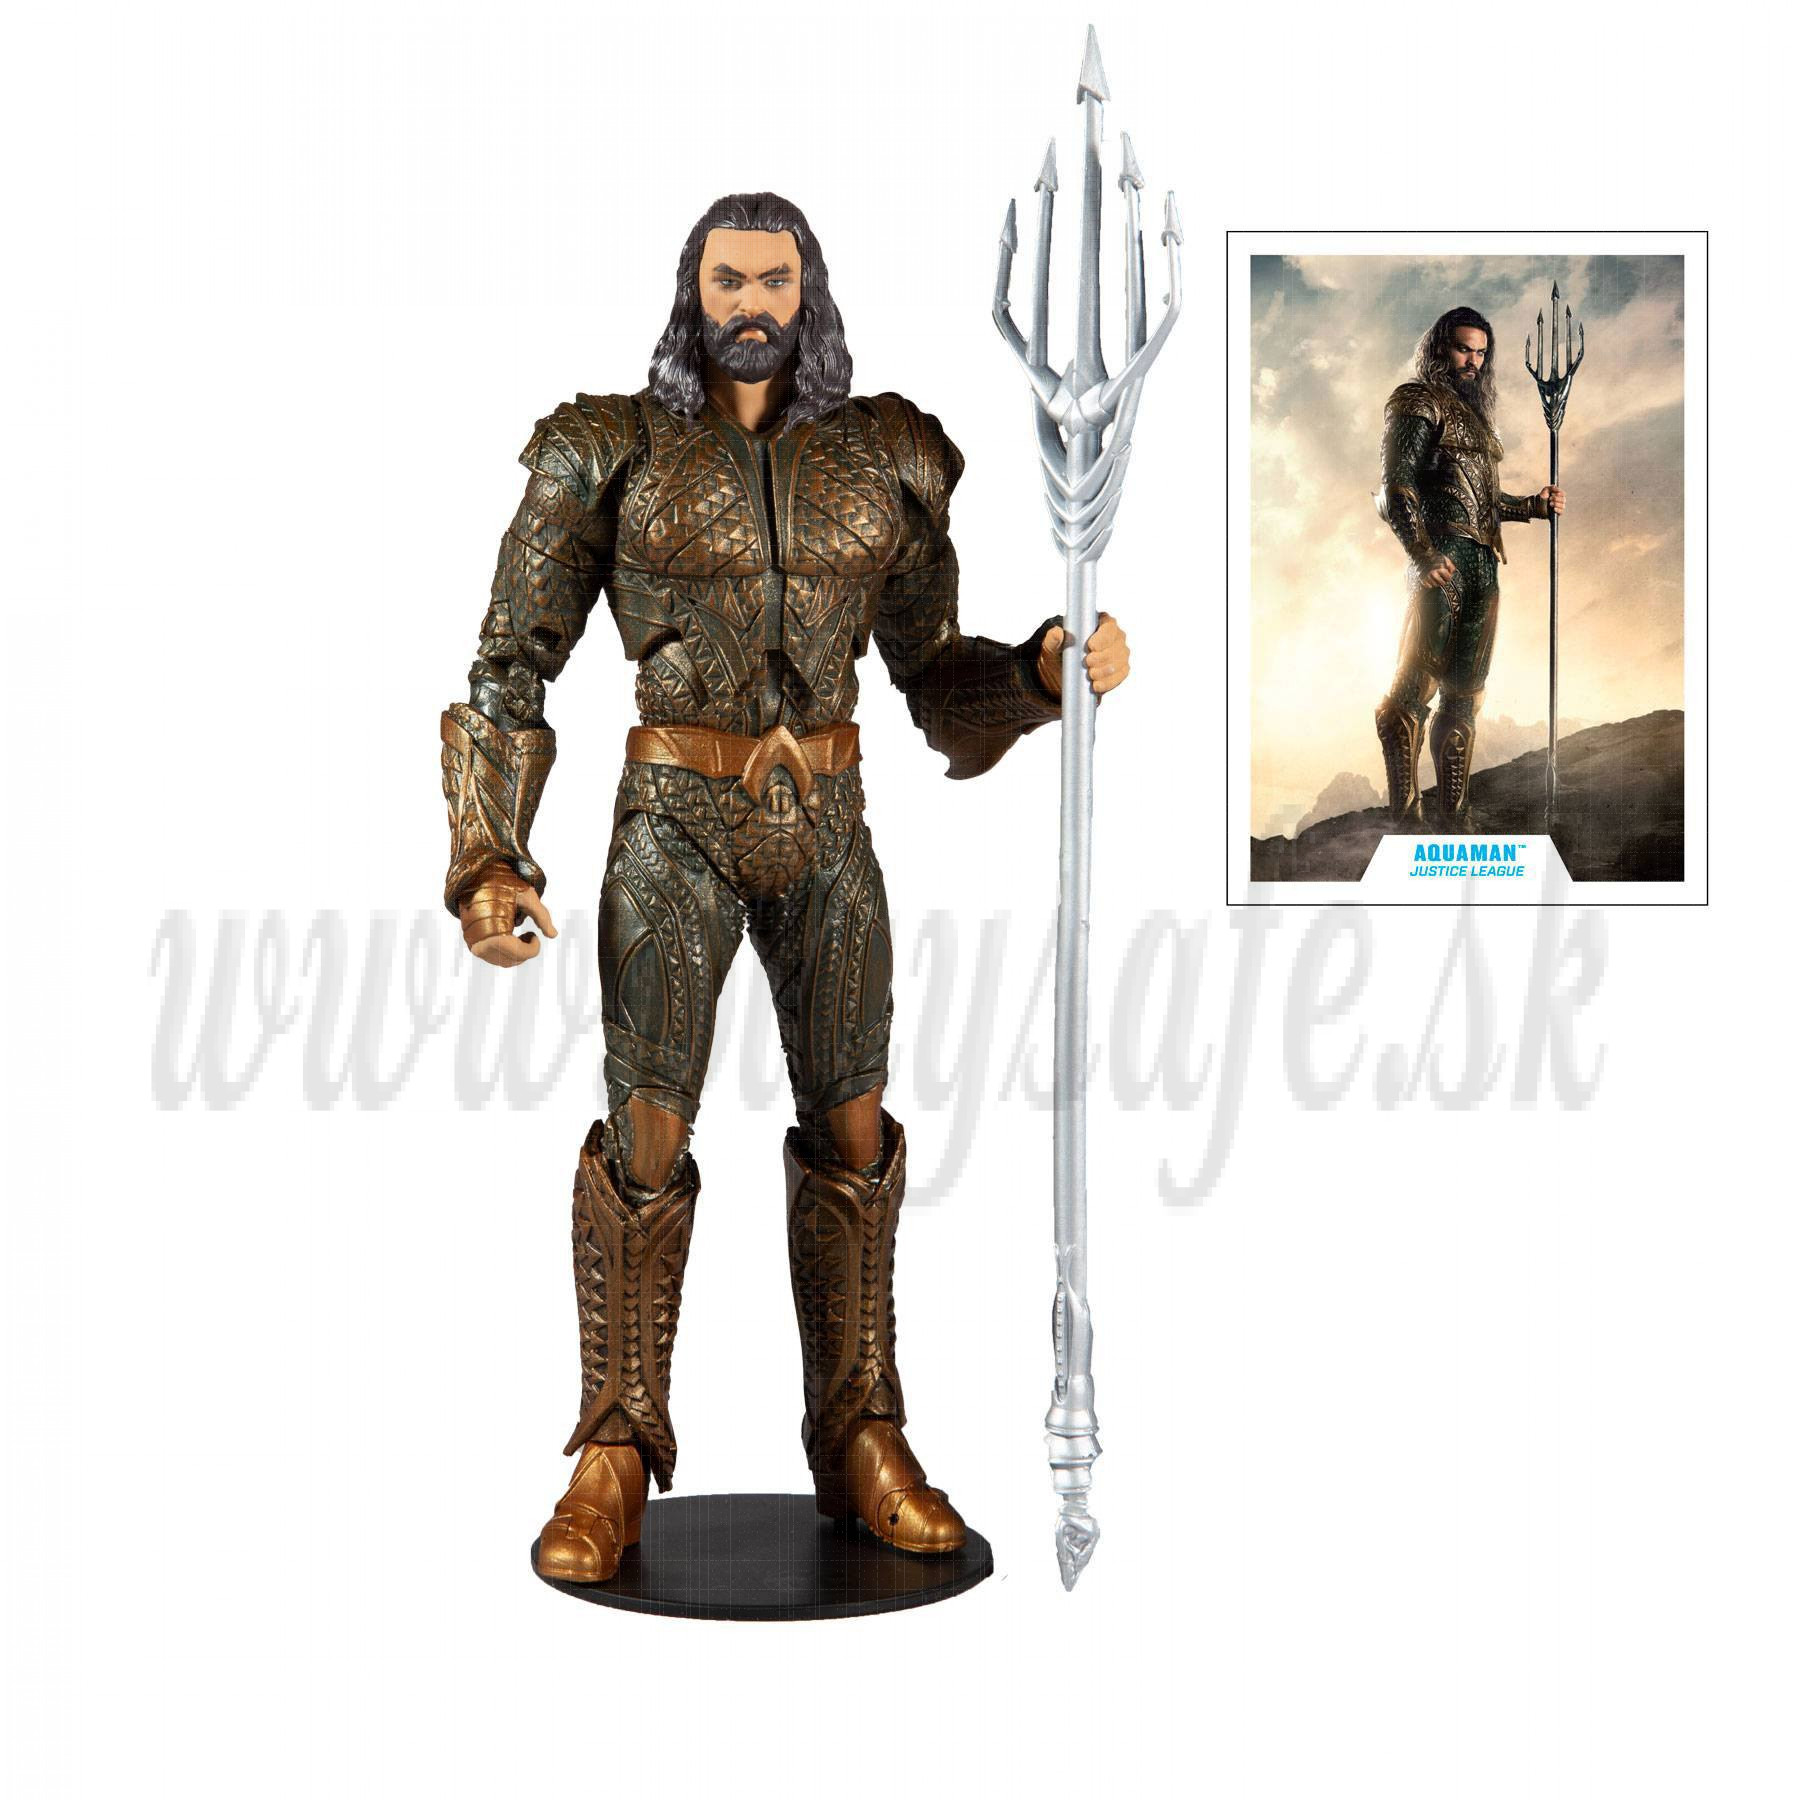 DC Justice League Movie Action Figure Aquaman, 18cm